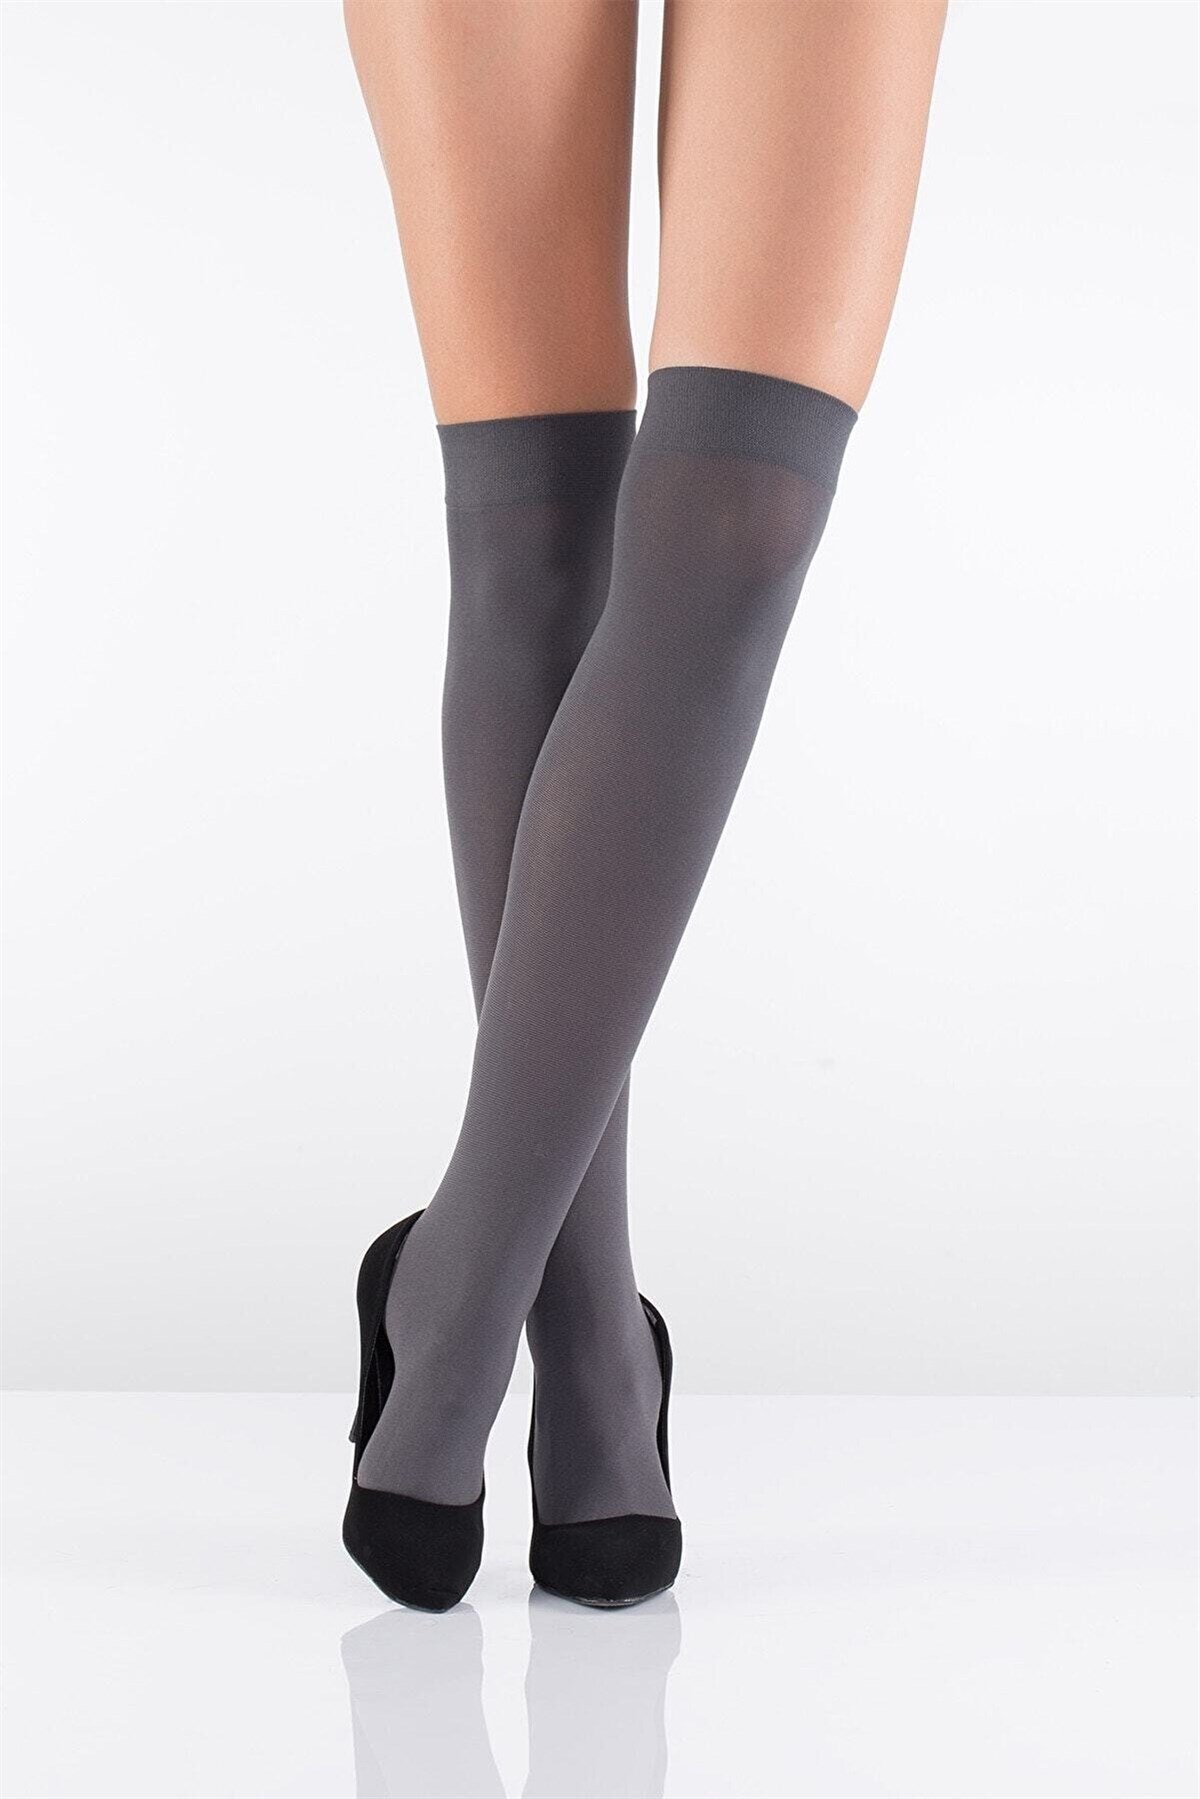 İtaliana Kadın Düz Koton Diz Üstü Çorap 1606 Yeni Sezon! Moda! Ürünler  Rakipsiz Fiyatlar İç Giyim, Ev Tekstili, Kozmetik, Çeyiz ve Daha Fazlası |  yoncatoptan.com